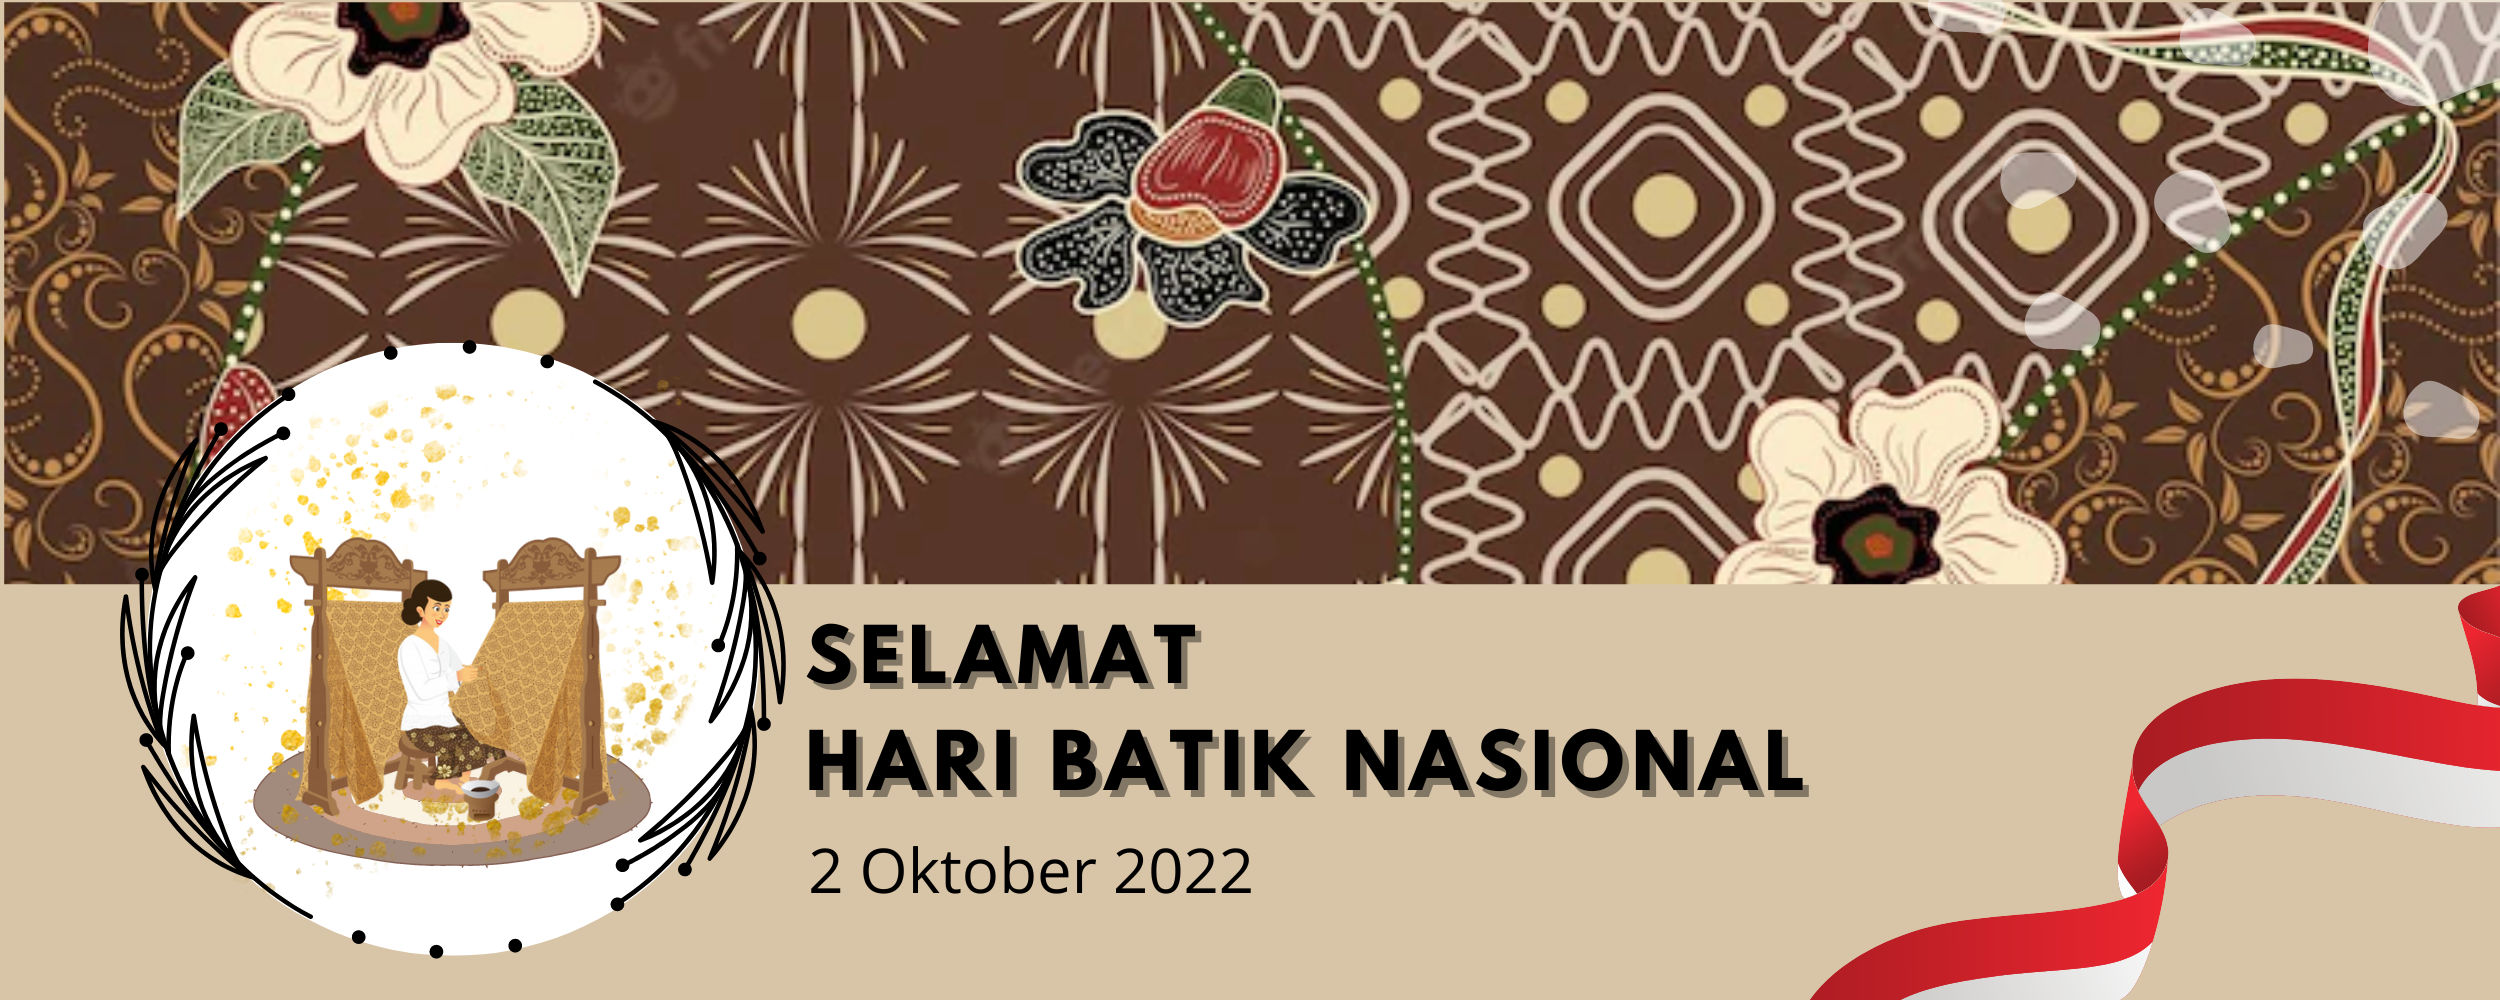 Gambar: Hari Batik Nasional 2022